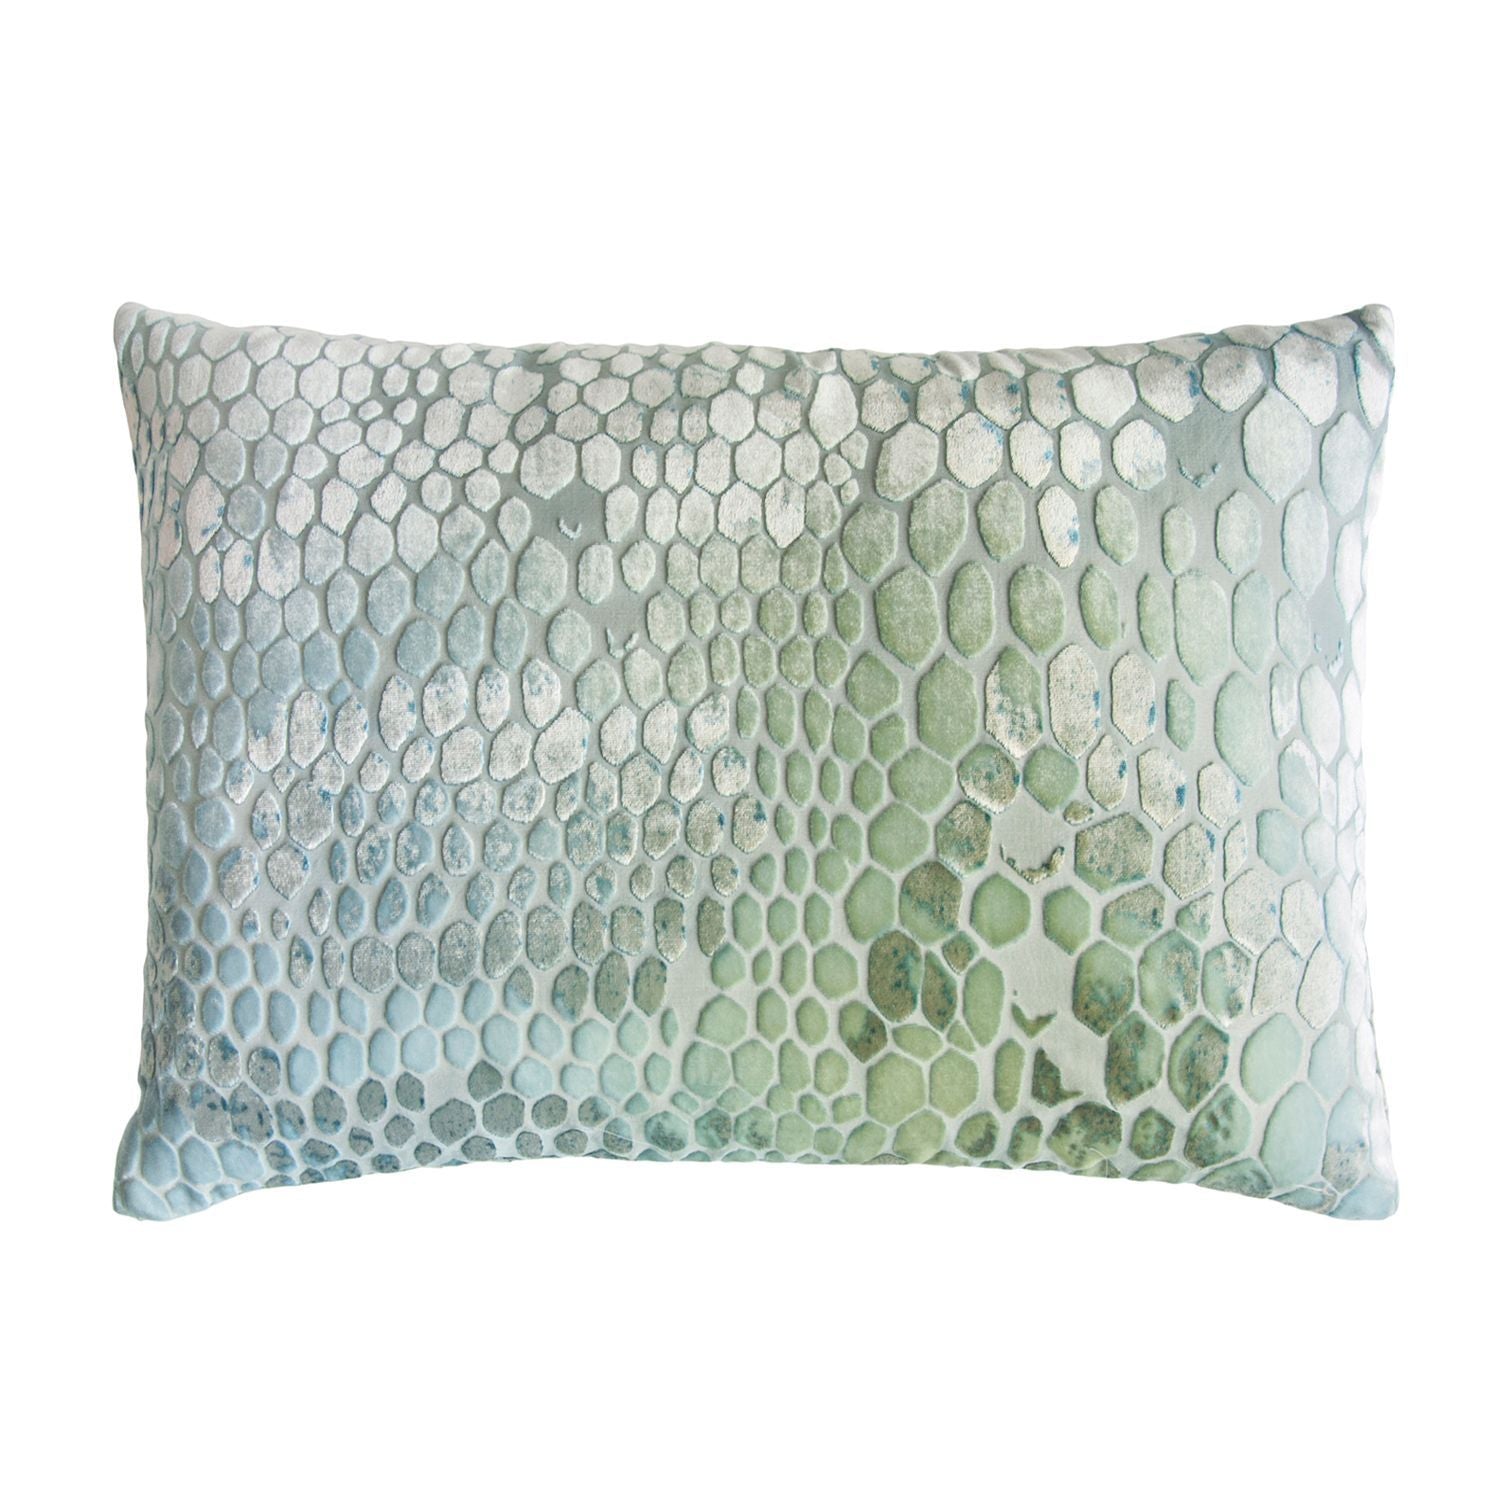 Fig Linens - Ice Snakeskin Velvet Pillows by Kevin O'Brien Studio